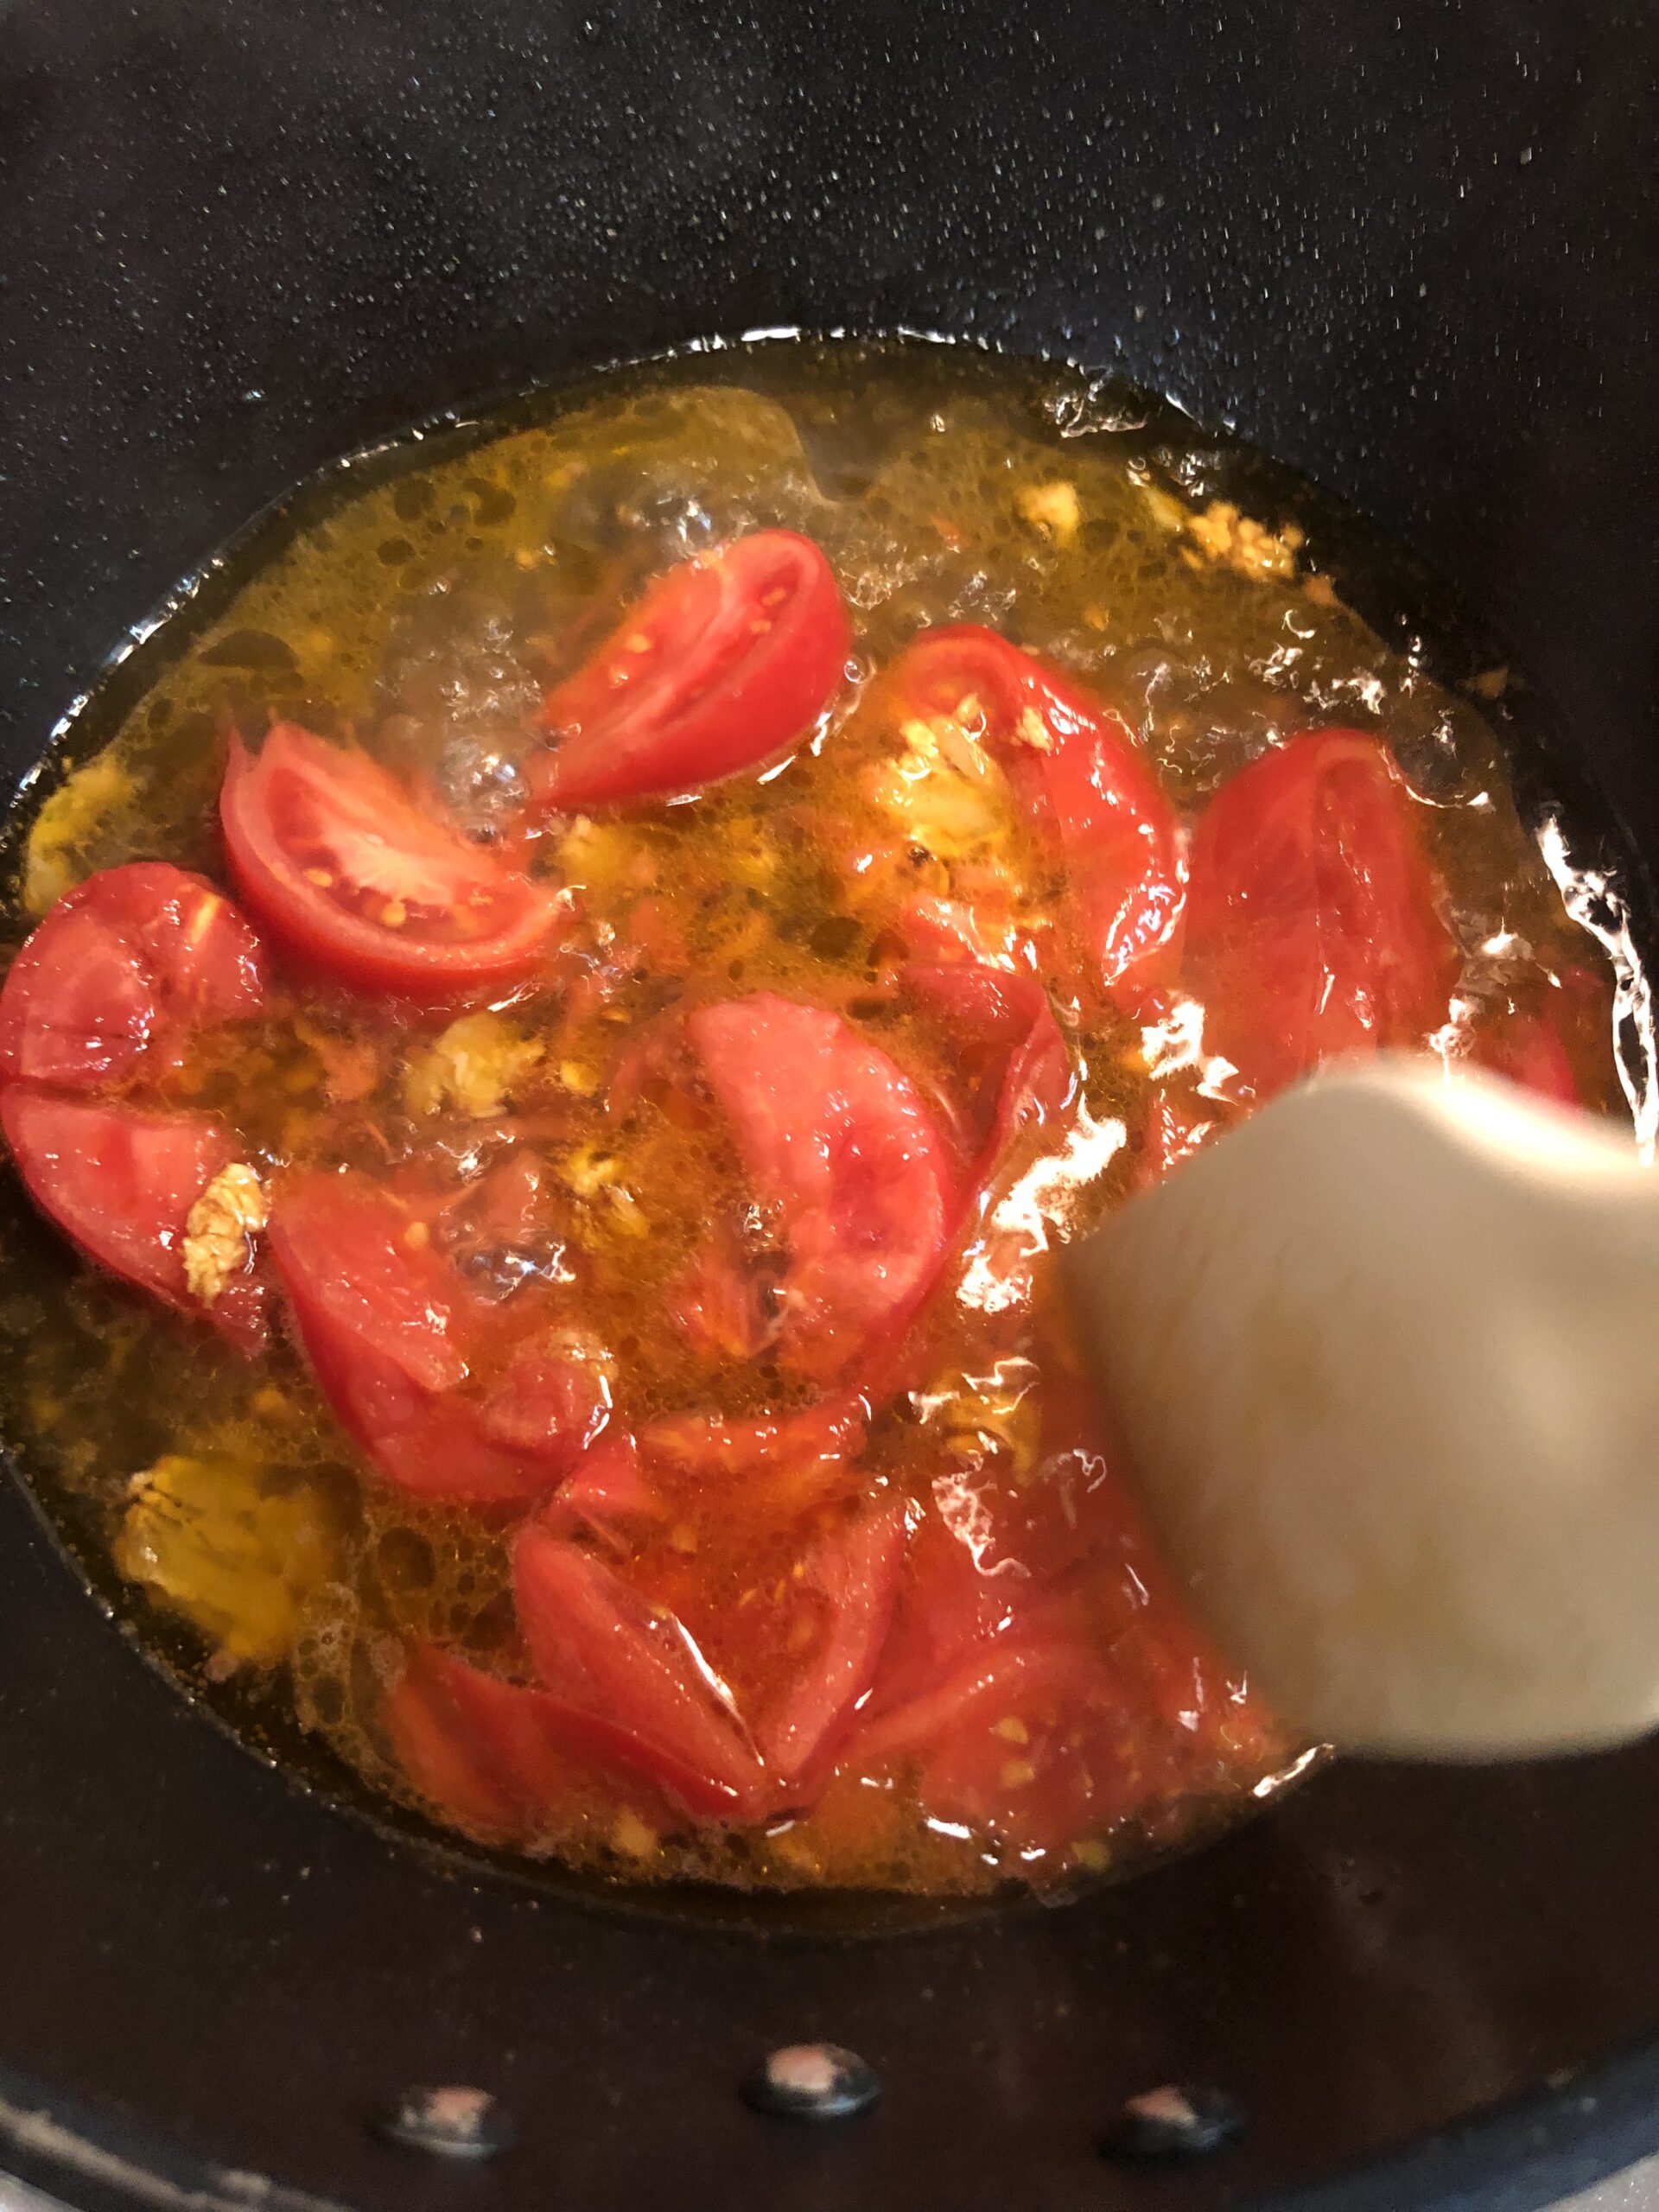 ゴムベラでトマトを潰しながら煮込んでいる様子の画像です